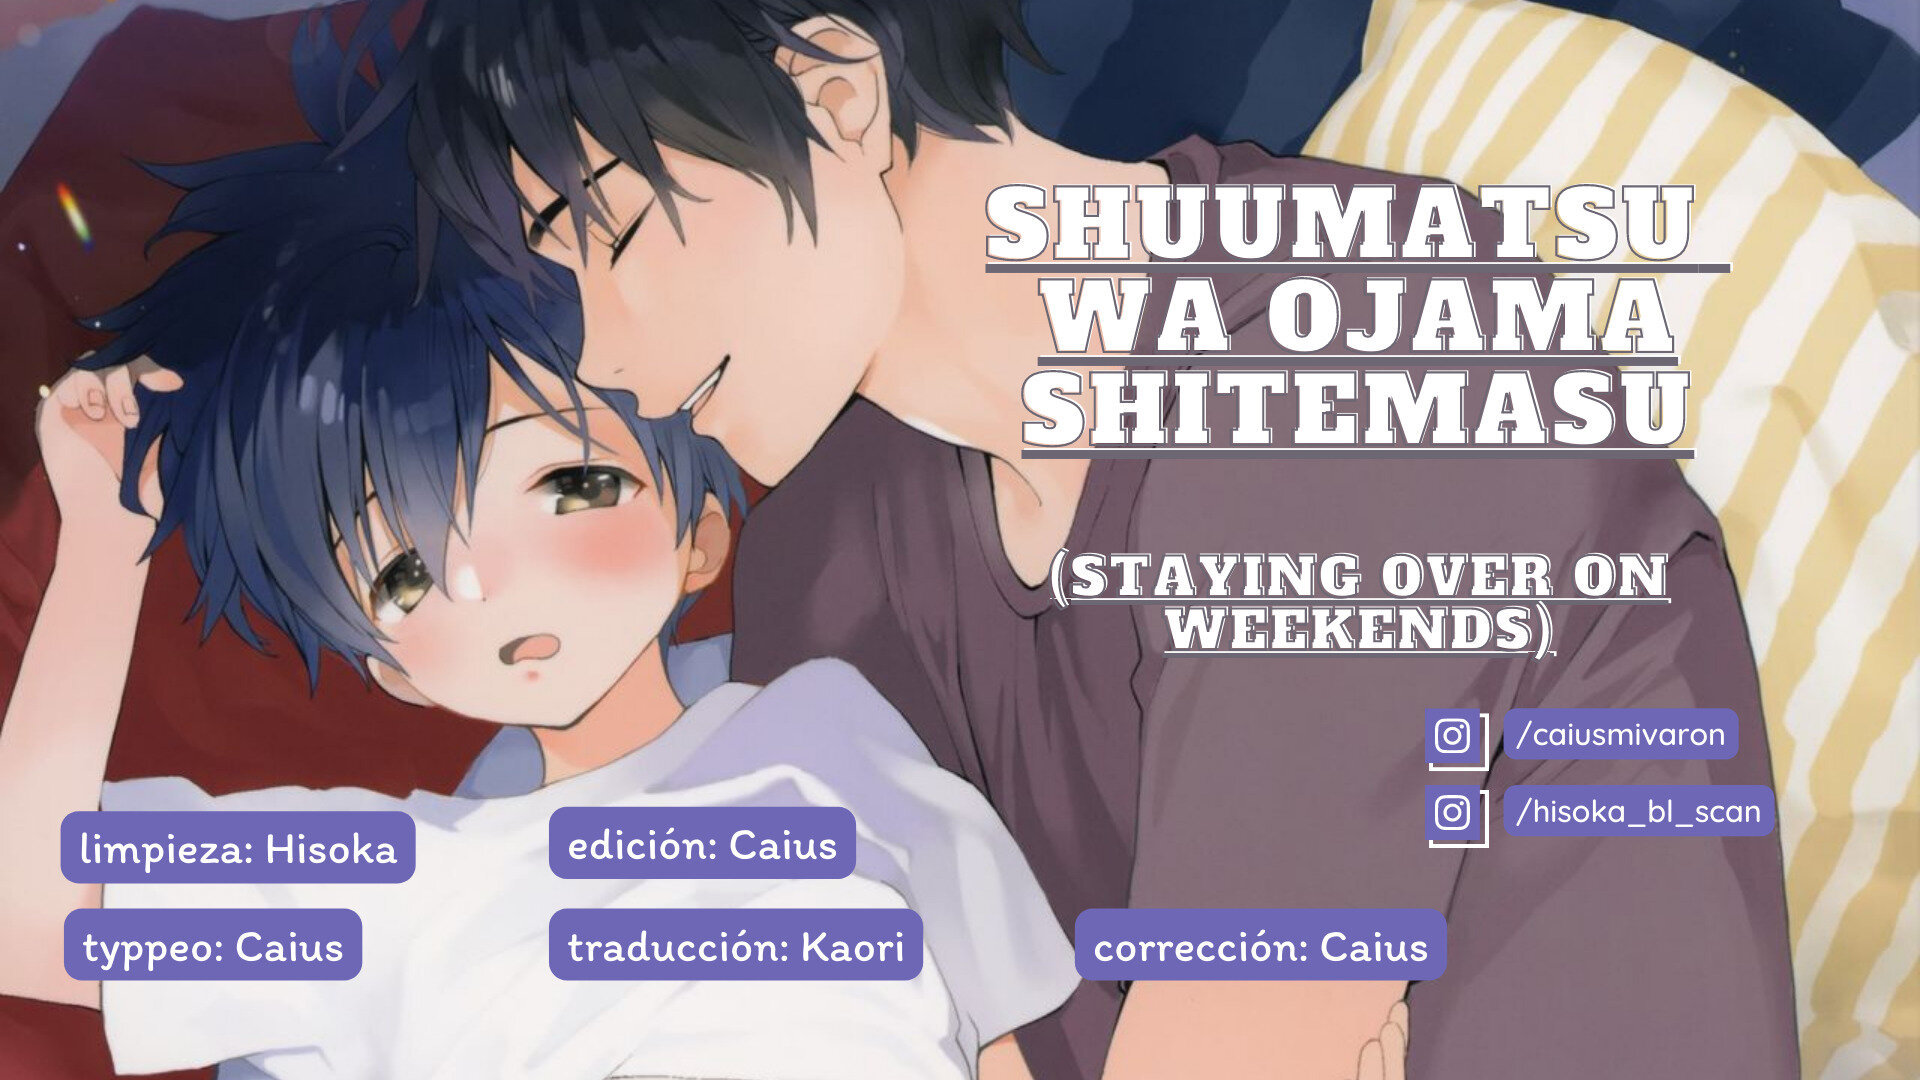 Shuumatsu wa Ojama Shitemasu - Staying Over On Weekends - 3